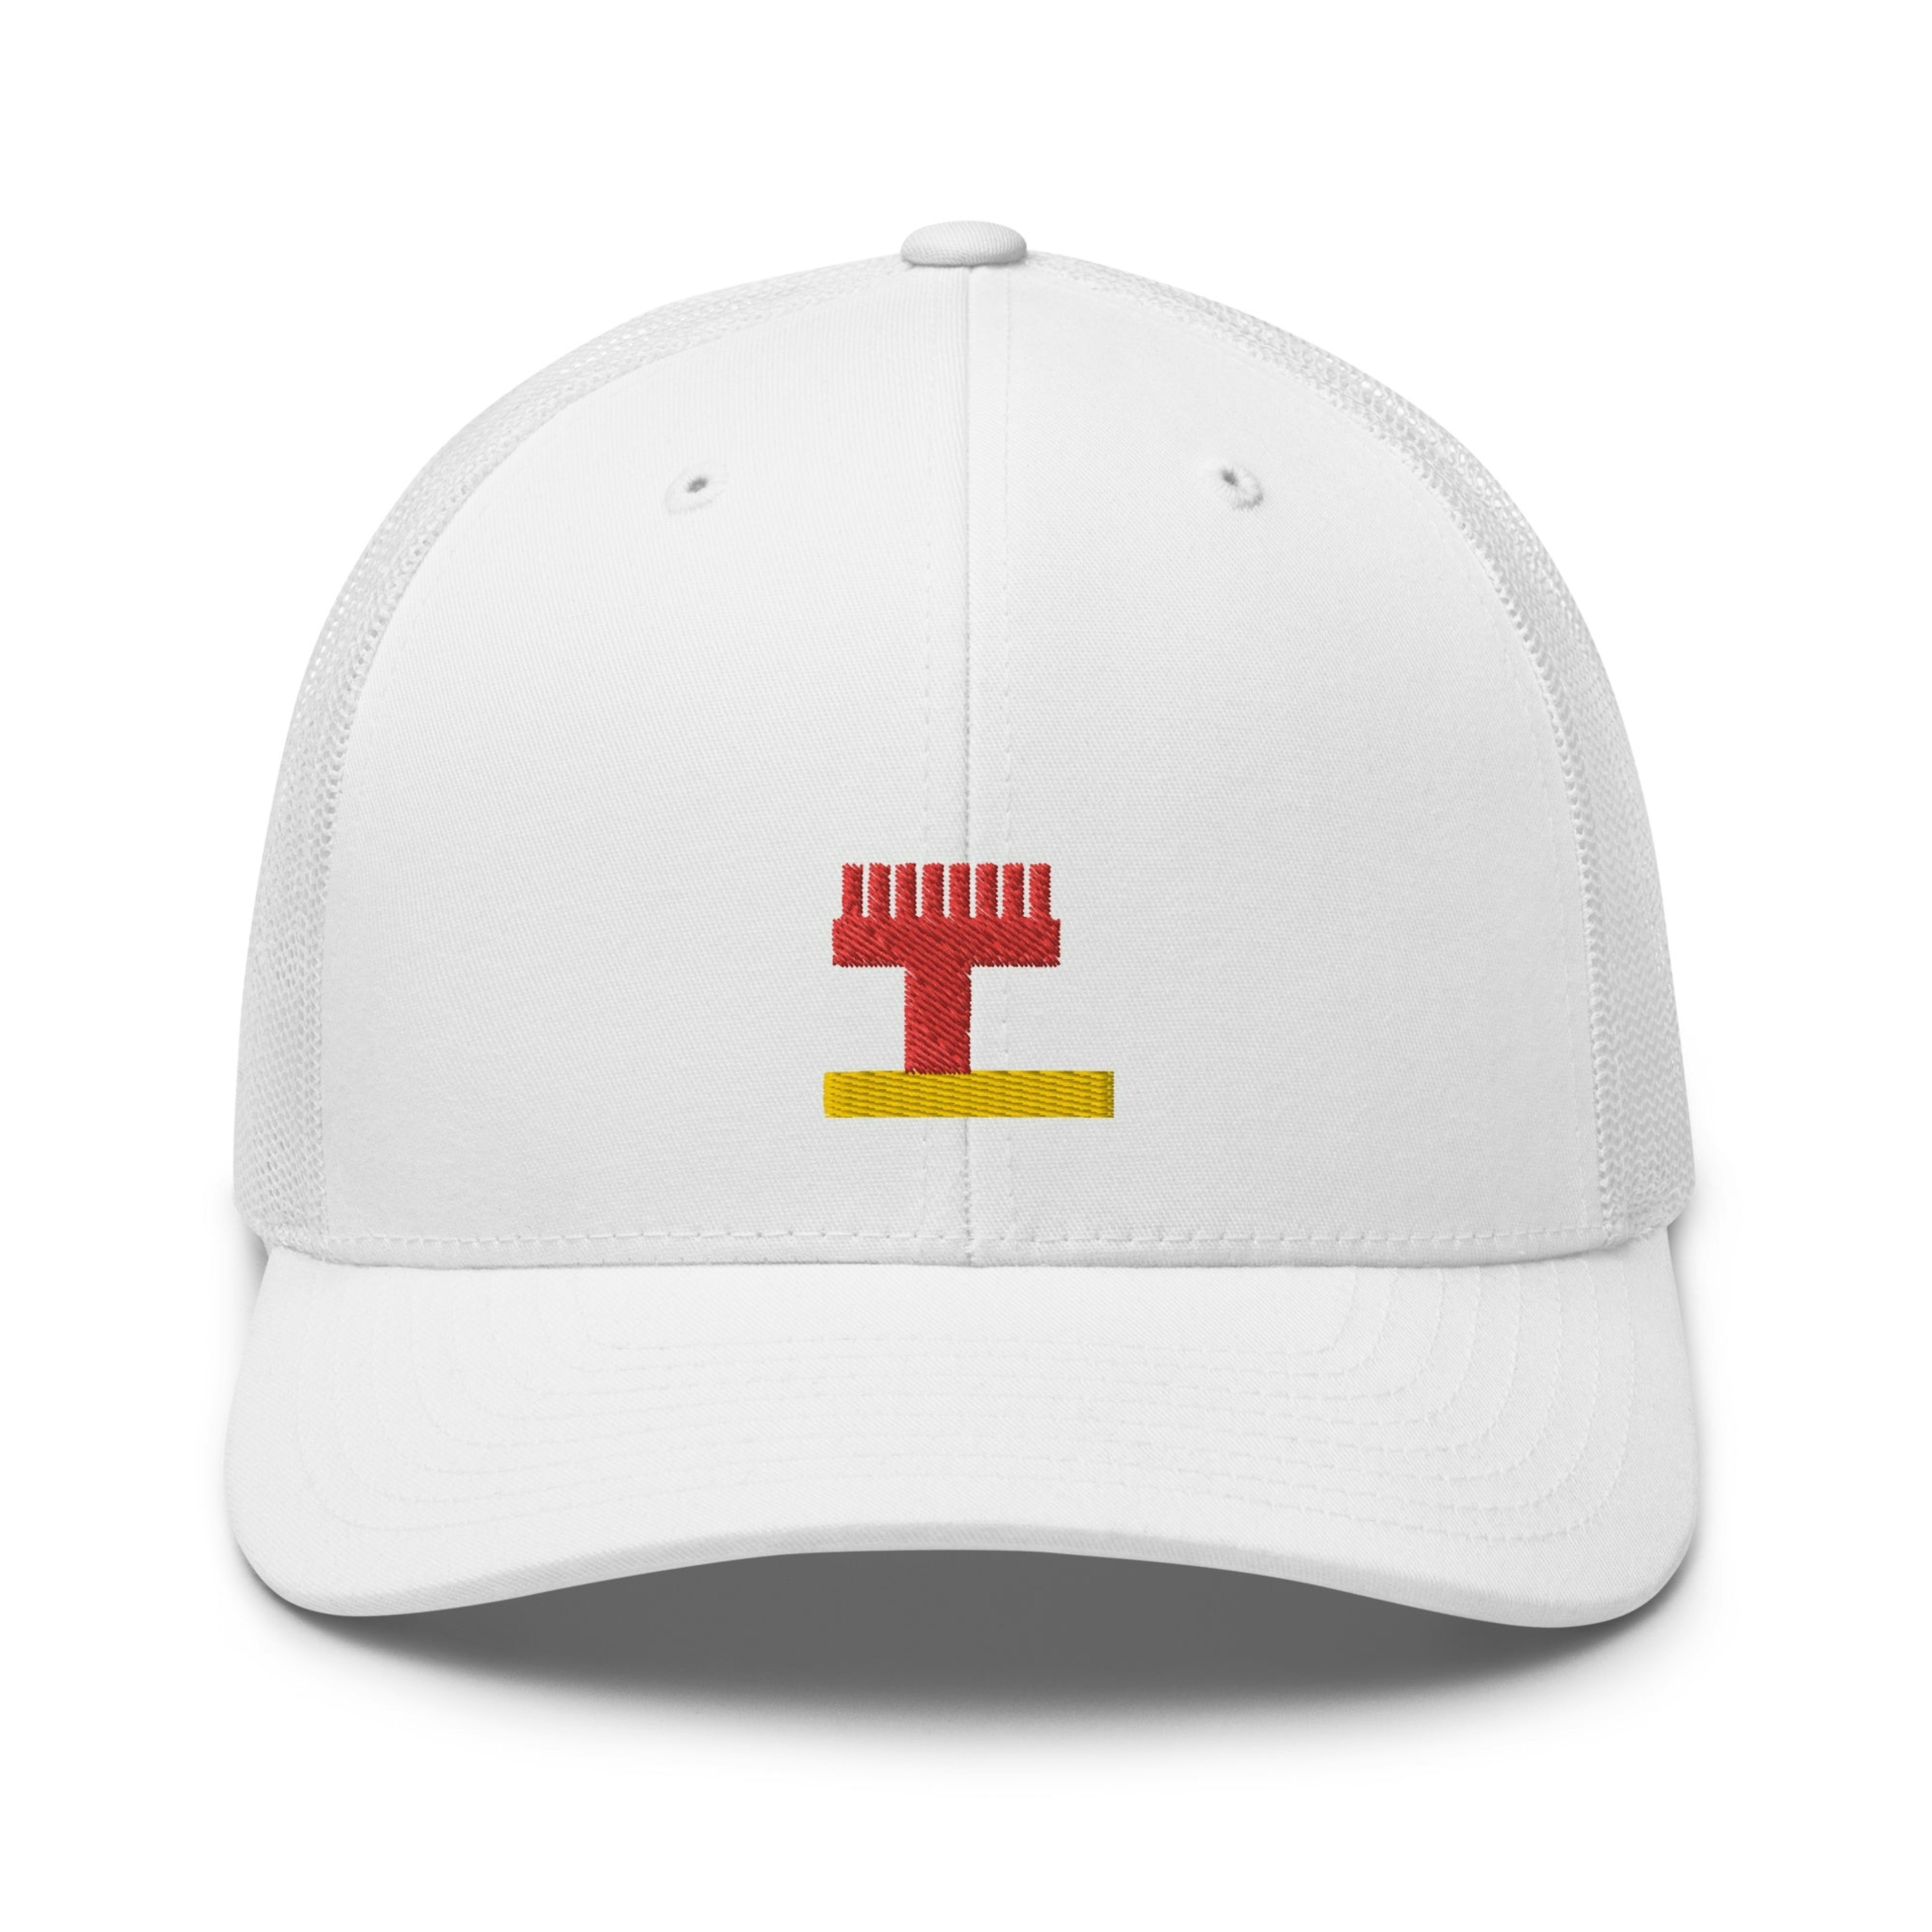 Pixel SANGO trucker cap